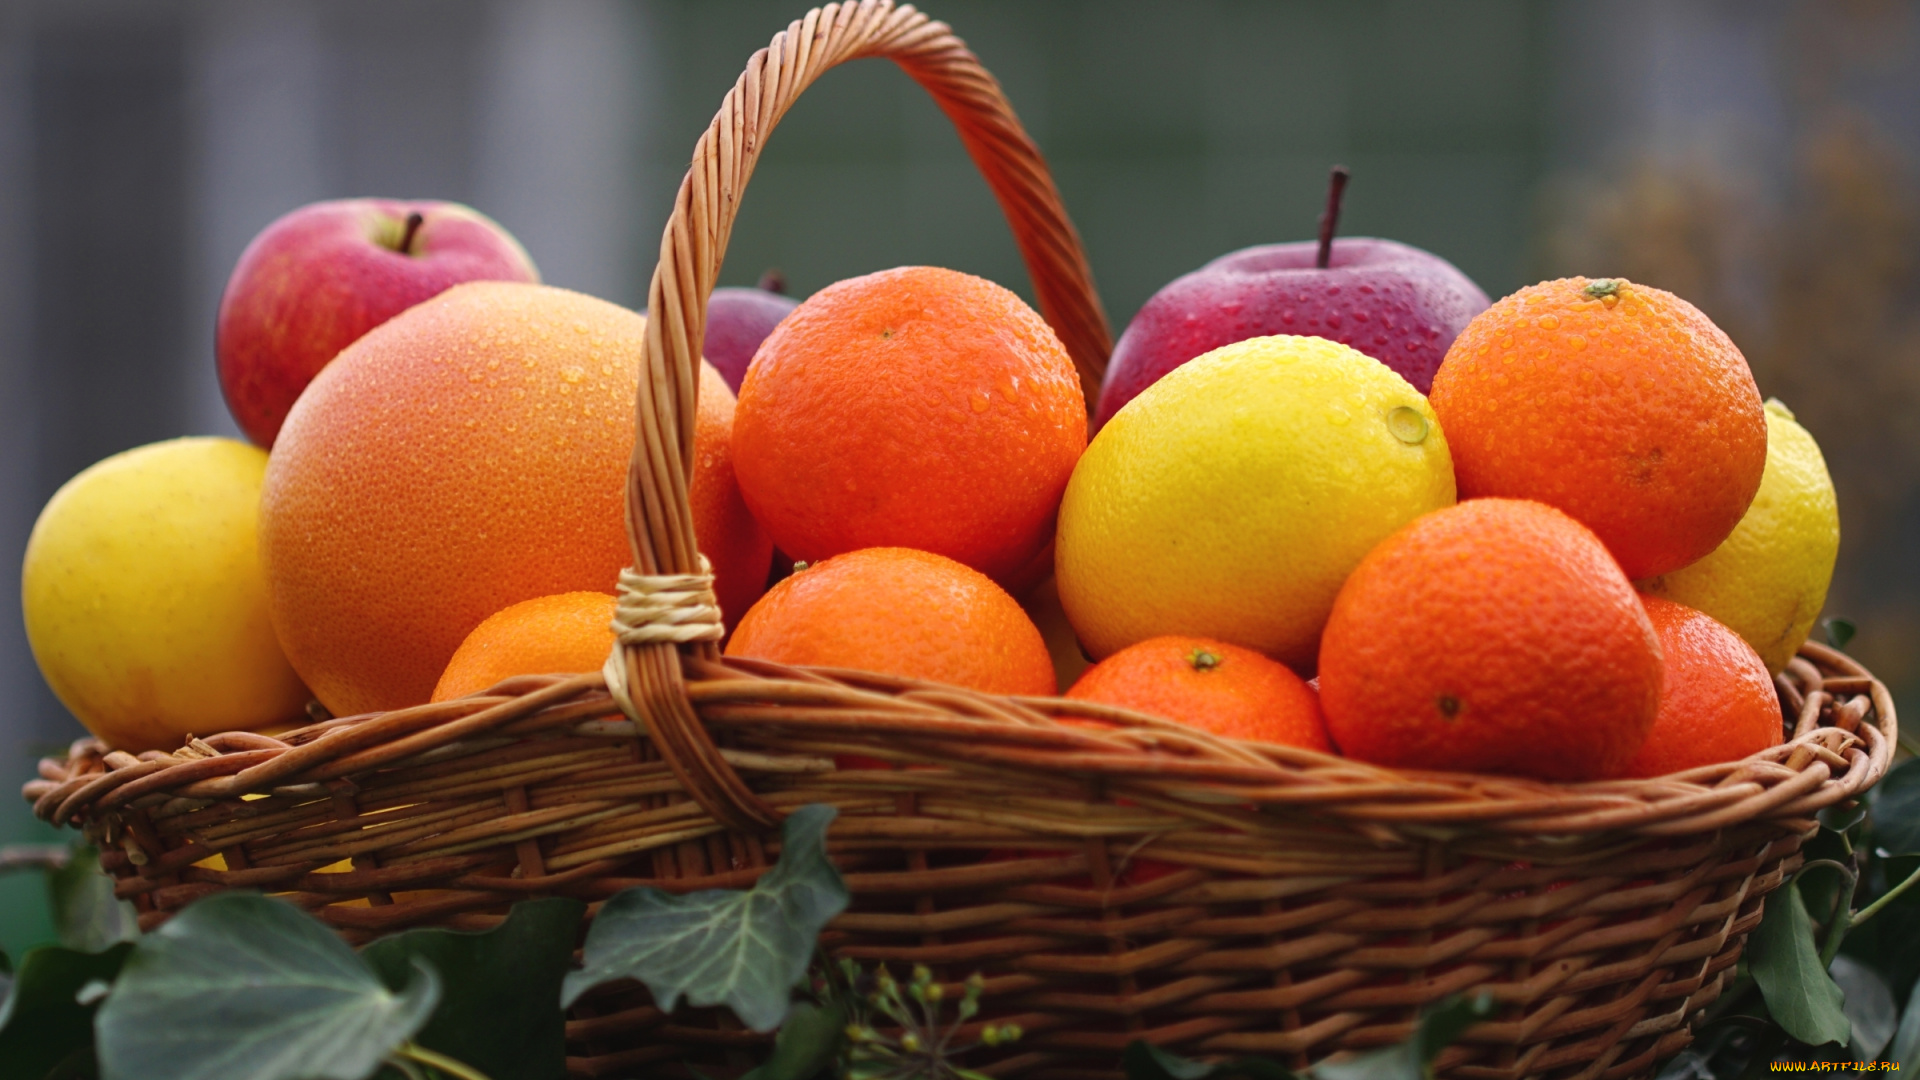 еда, фрукты, , ягоды, цитрусы, лимон, мандарин, апельсин, яблоко, корзина